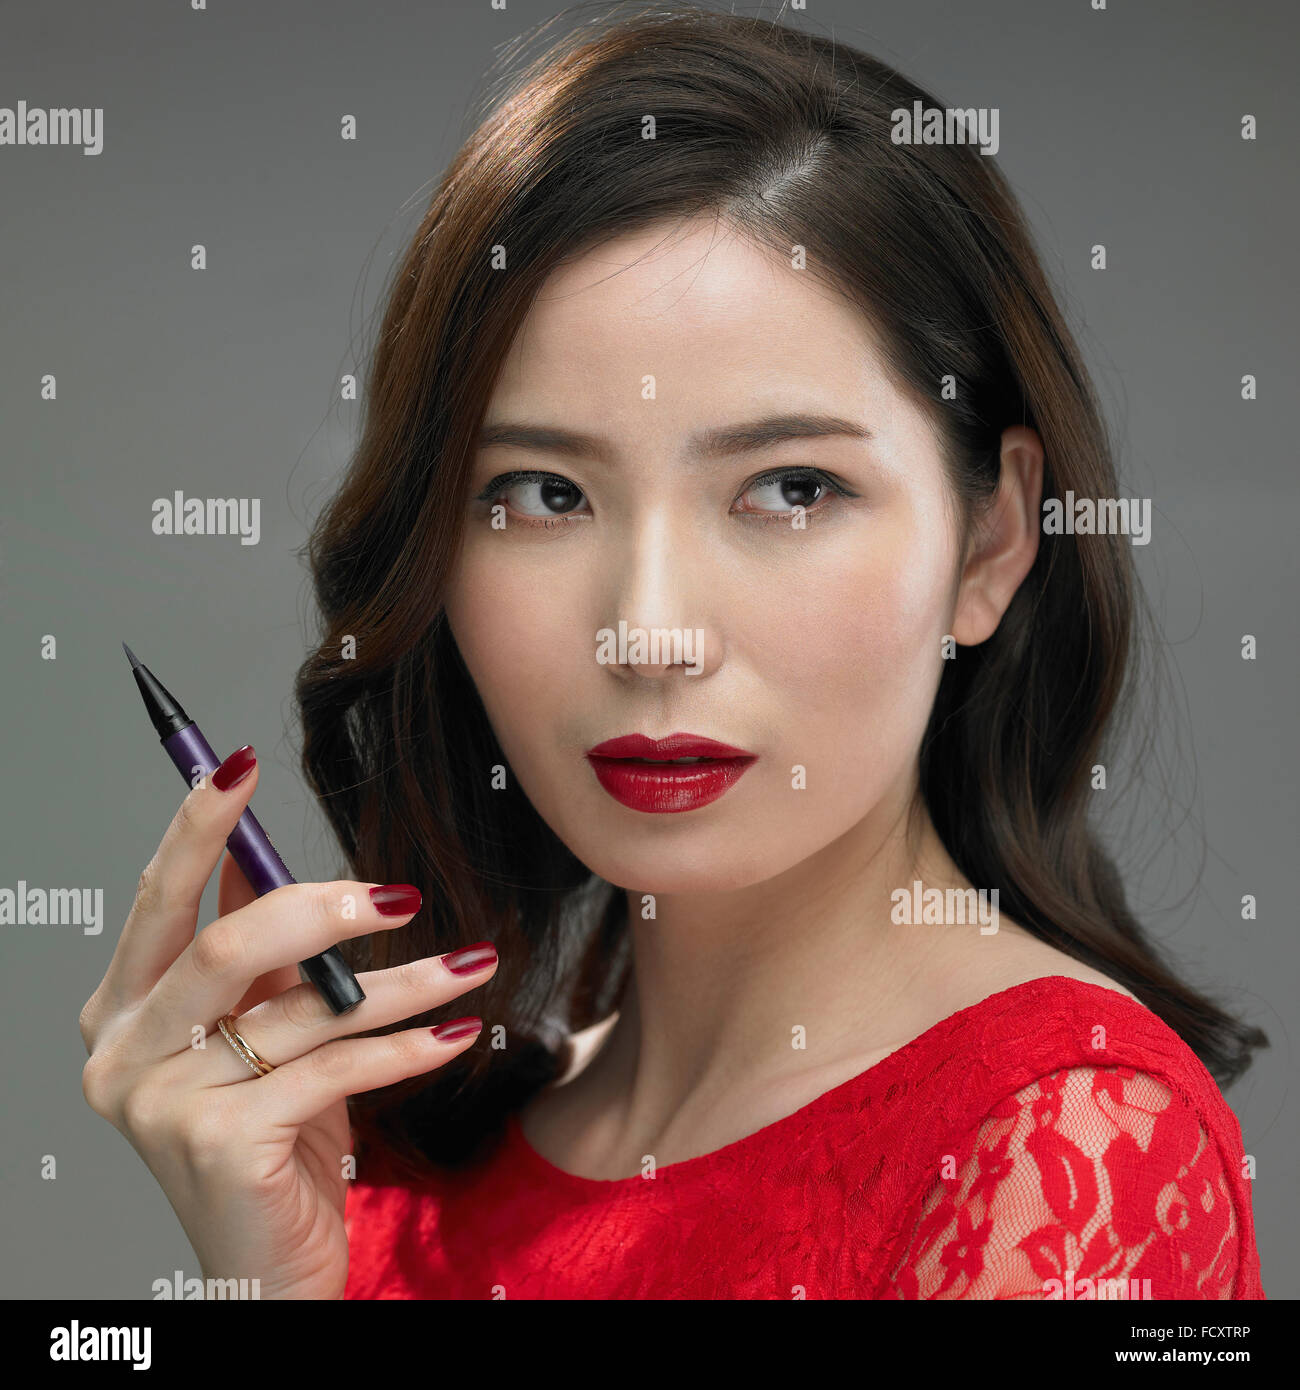 Ritratto di giovane donna con labbra rosse e rosso camicetta in posa con un eyeliner Foto Stock